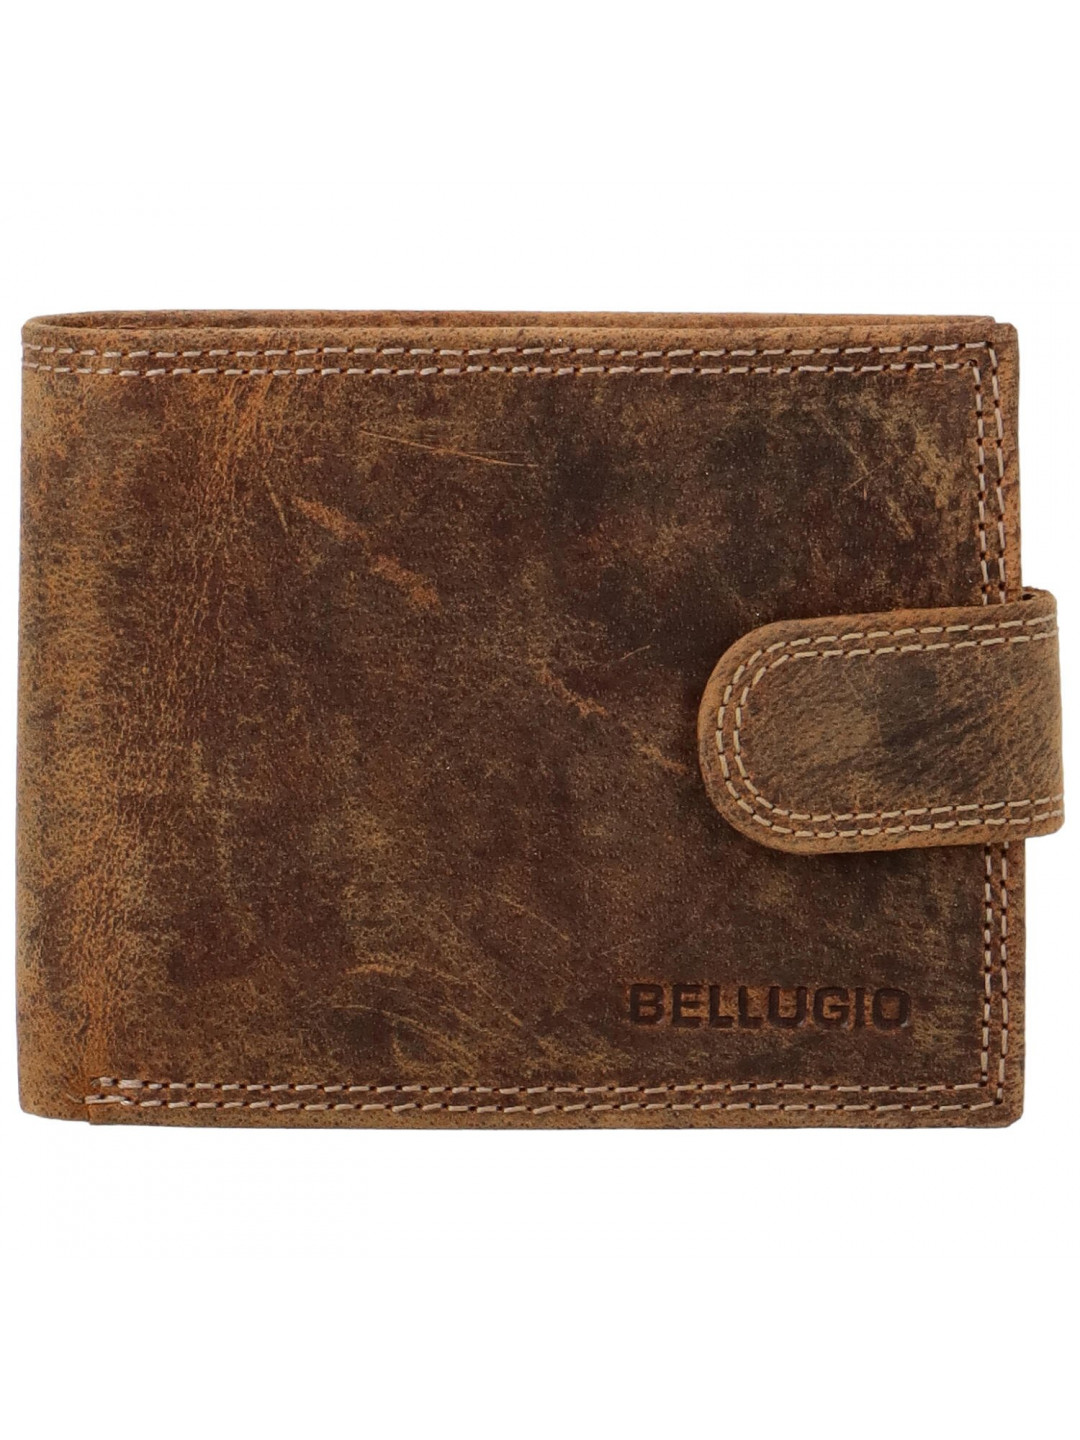 Pánská kožená peněženka tmavě hnědá – Bellugio Lokys